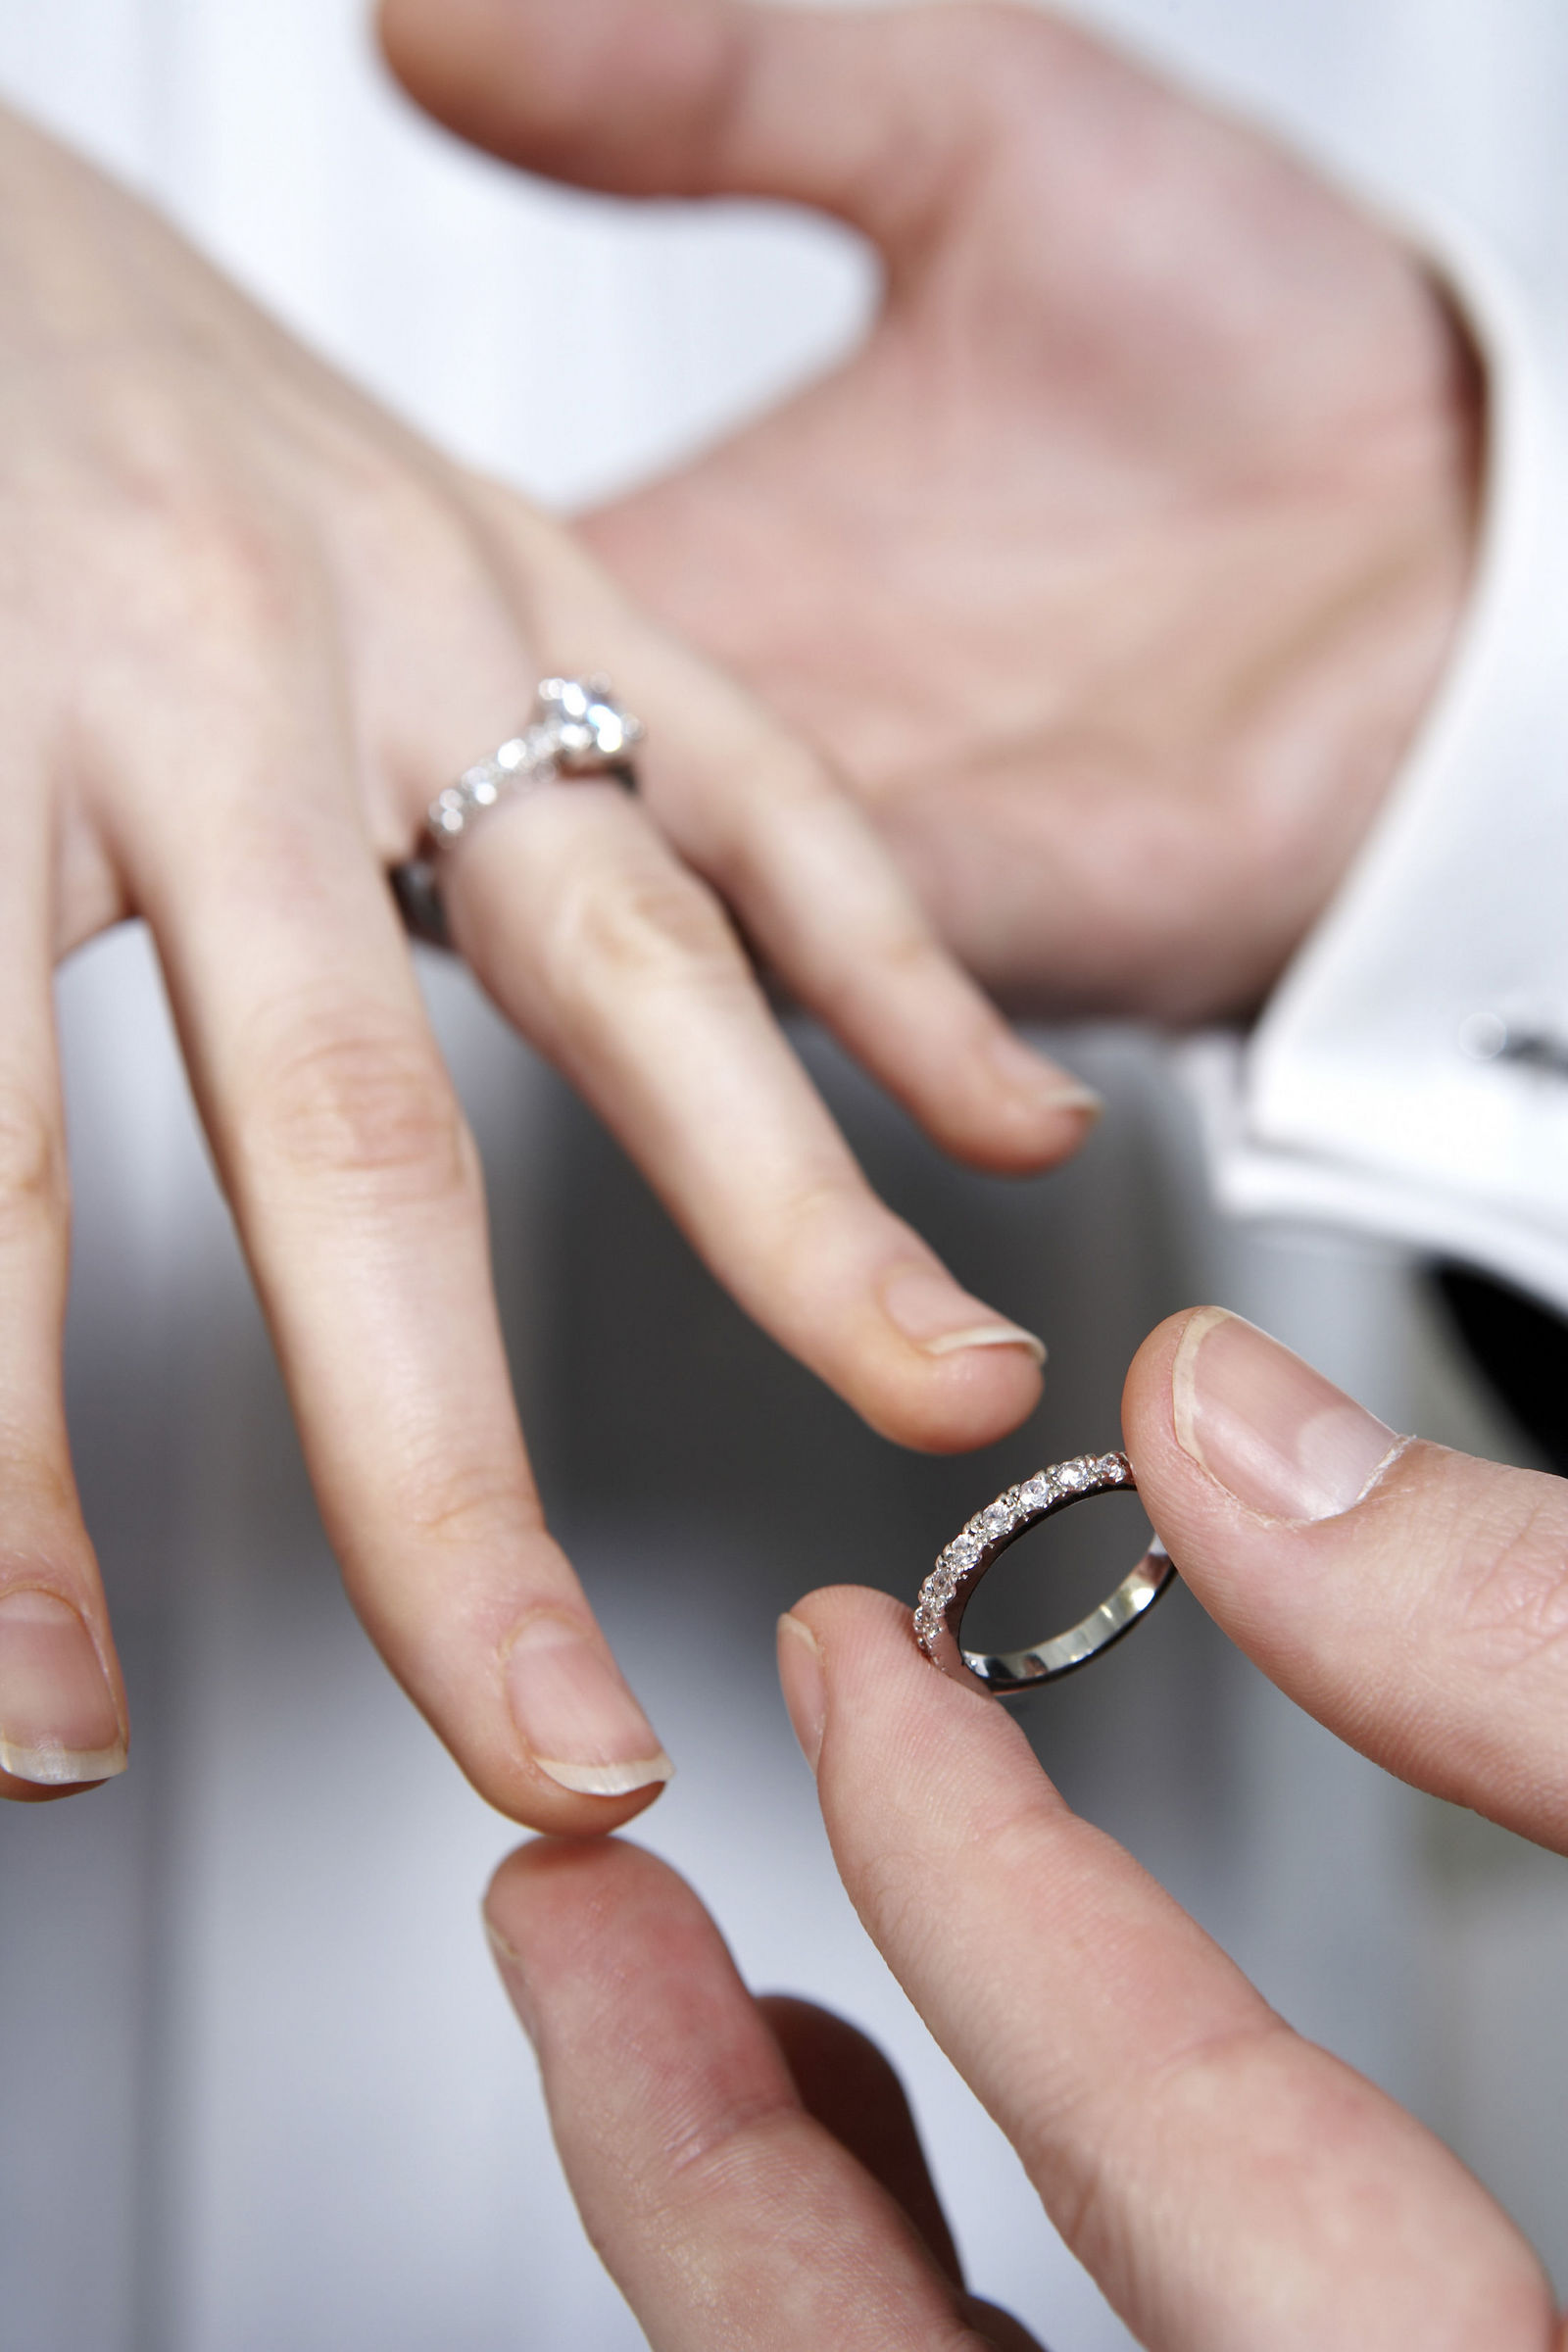 Можно вернуть кольцо в магазин. Обручальное кольцо на пальце. Надевает кольцо на палец. Помолвочное кольцо на пальце. Одевает обручальное кольцо.